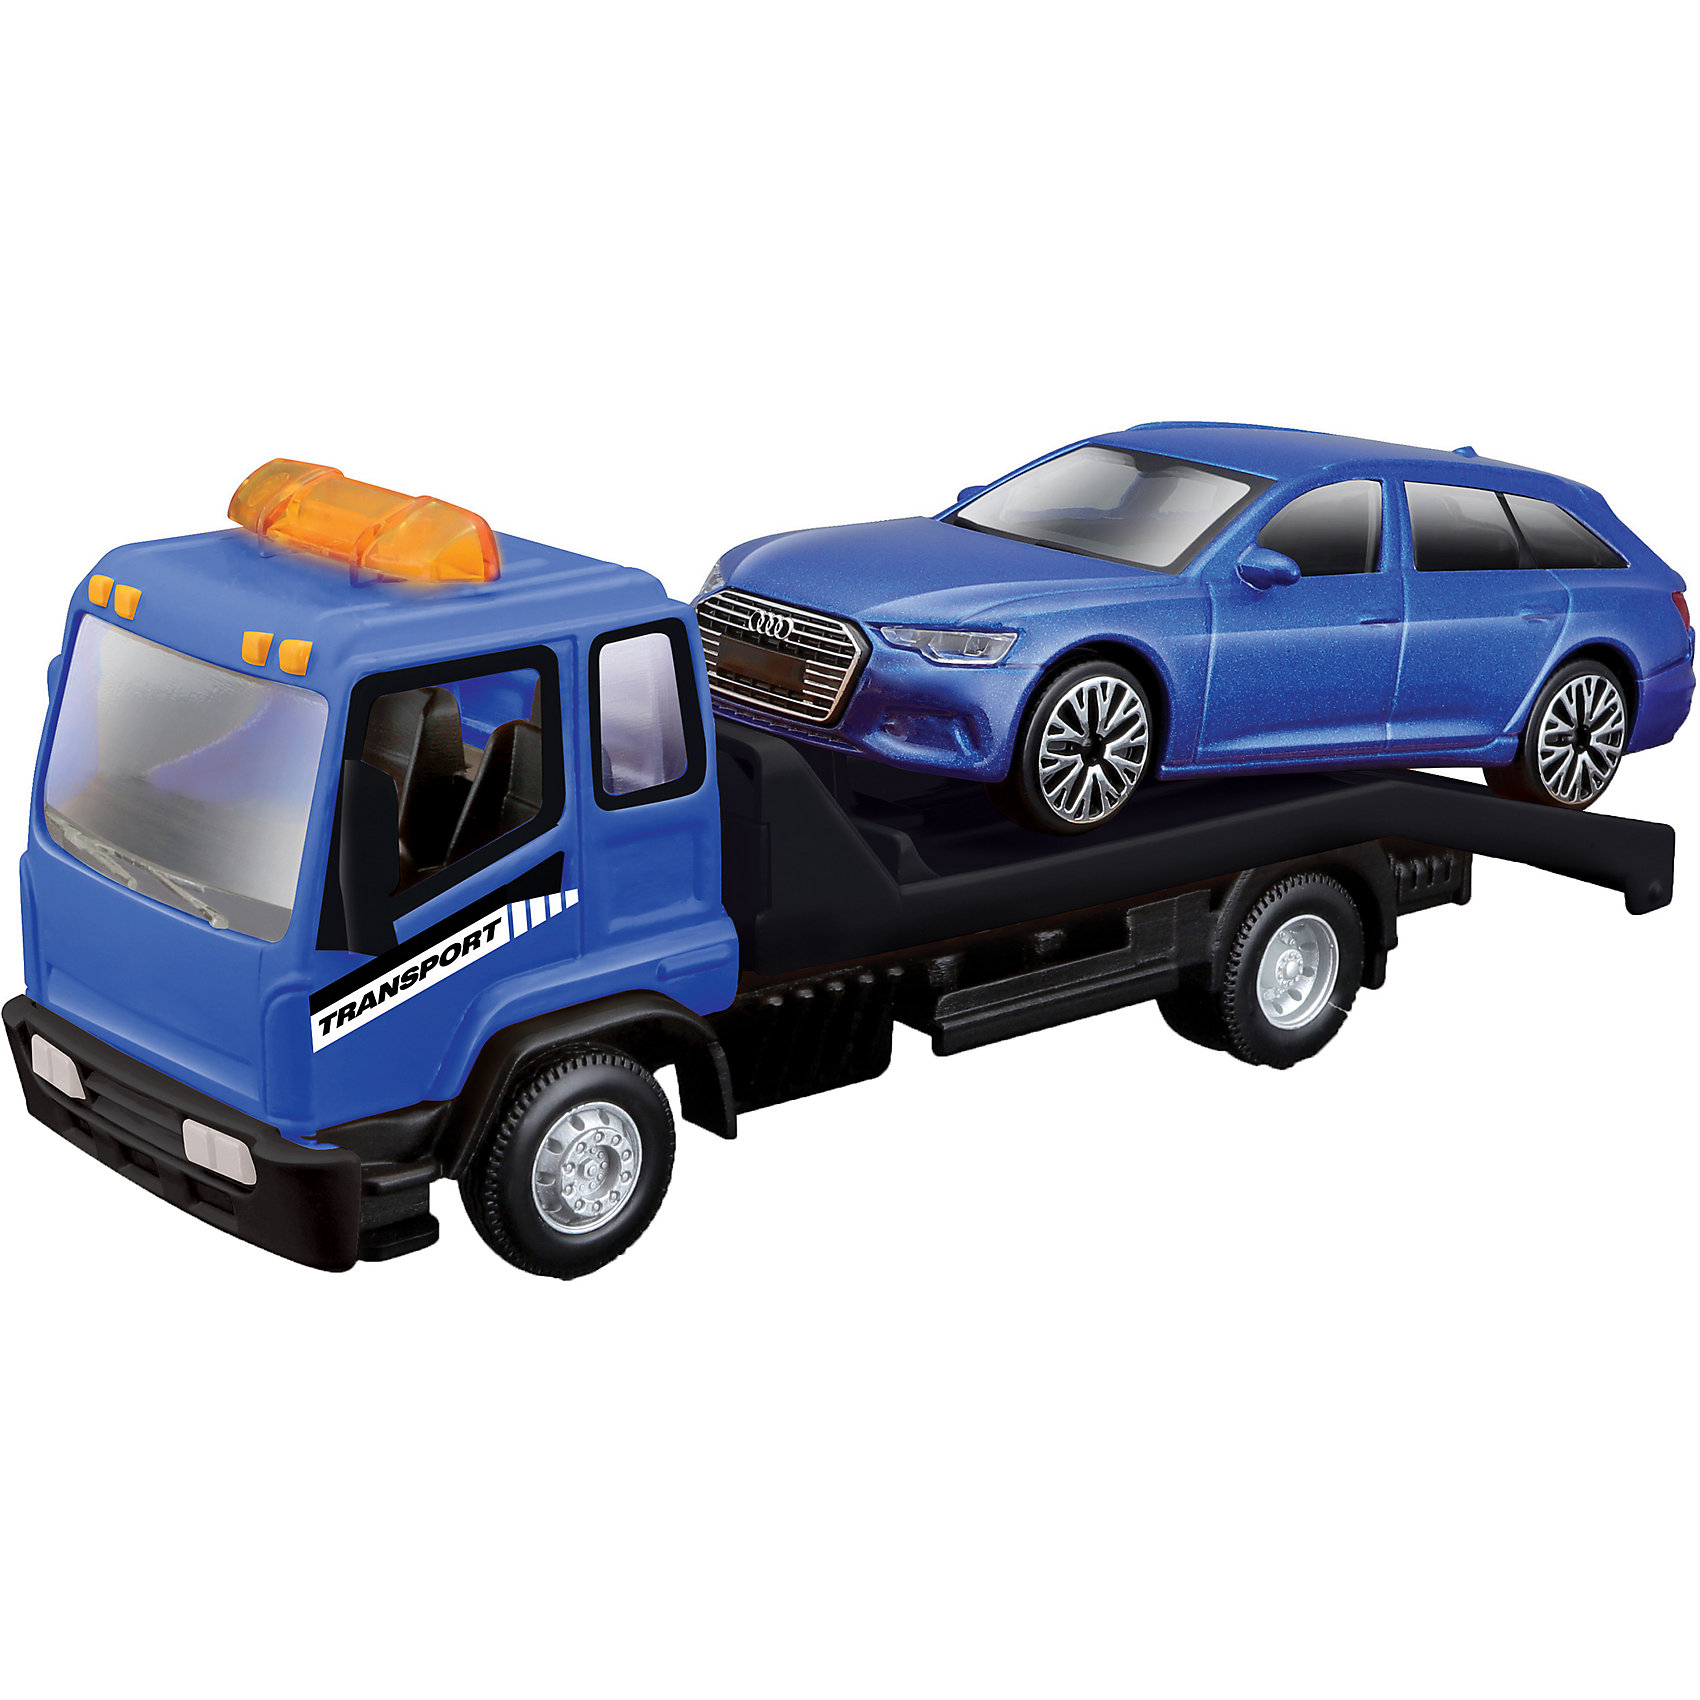 Коллекционная машинка-эвакуатор BBURAGO Street Fire Flatbed Tow Truckt, 1:43, синяя